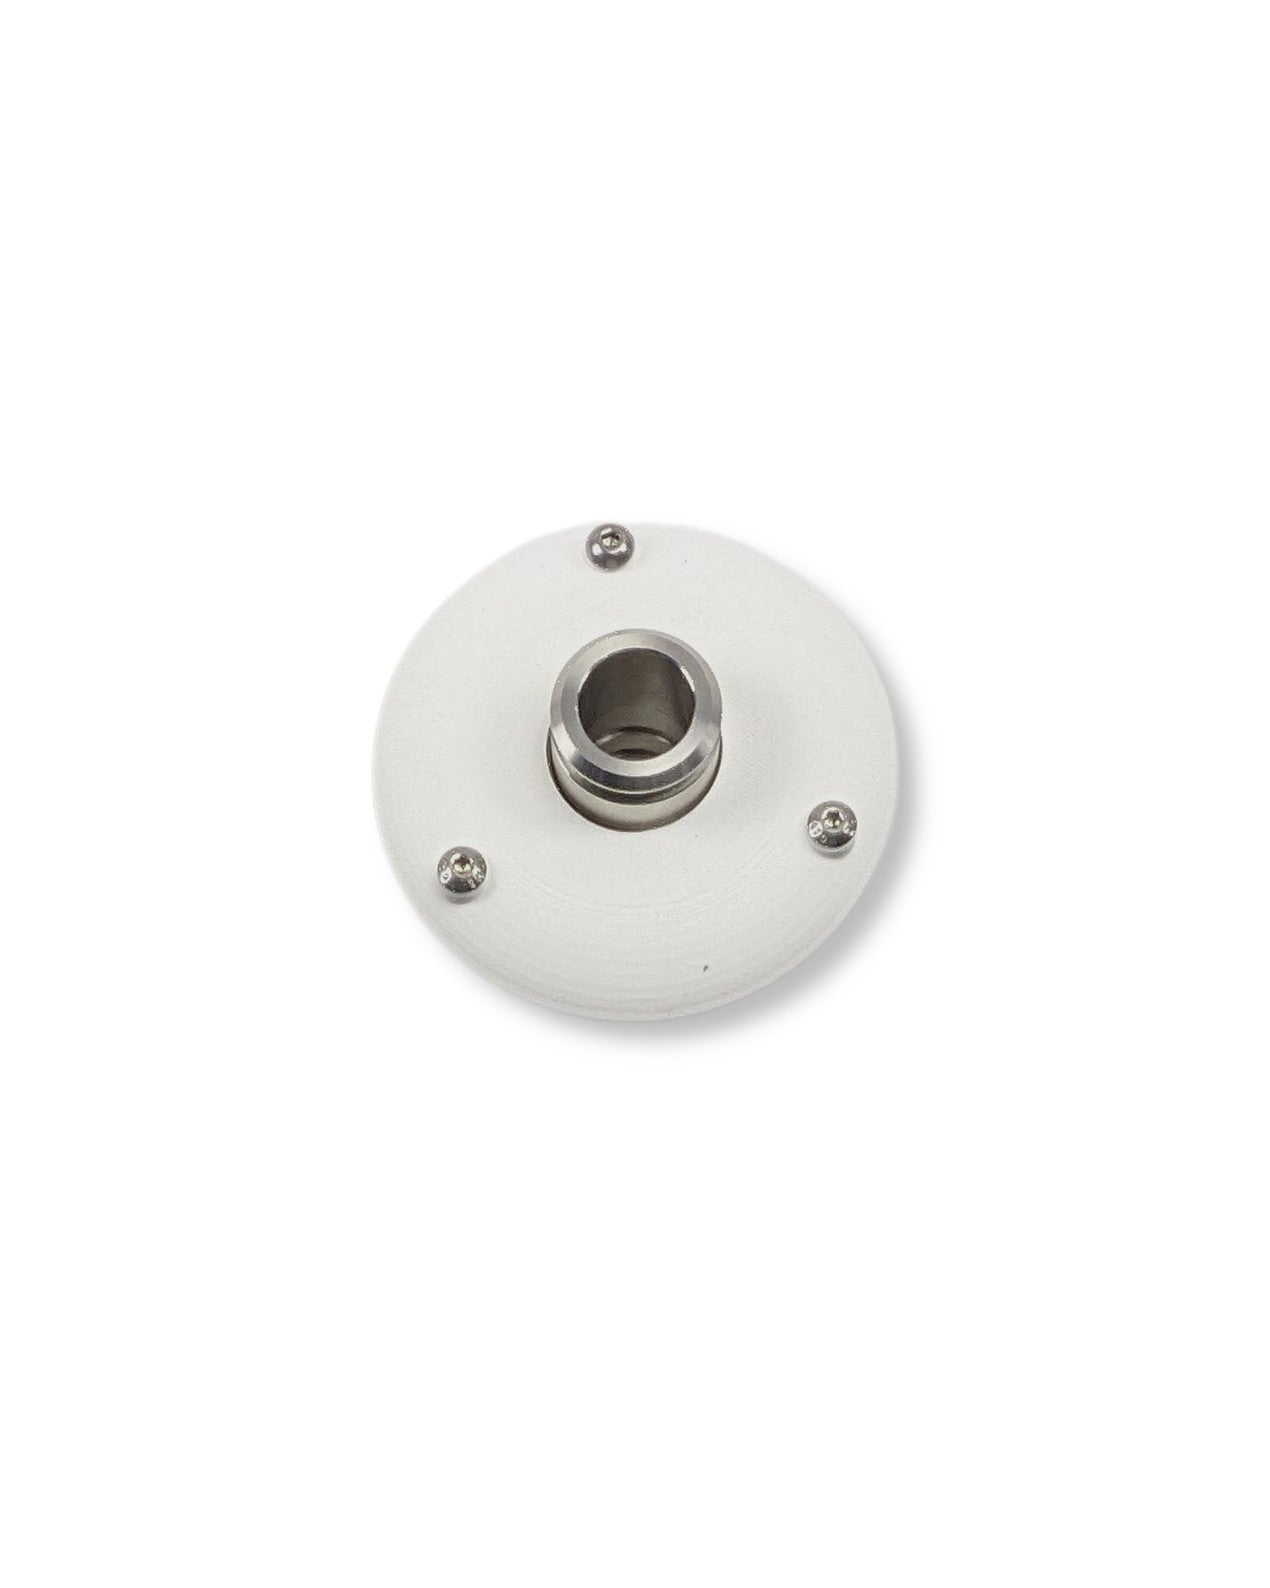 Ein runder PURION IBC Universal 17W SPL BS OTC-Knopf auf einer weißen Oberfläche, der speziell für die Wasserentnahme entwickelt wurde und von der UV Concept GmbH hergestellt wird.